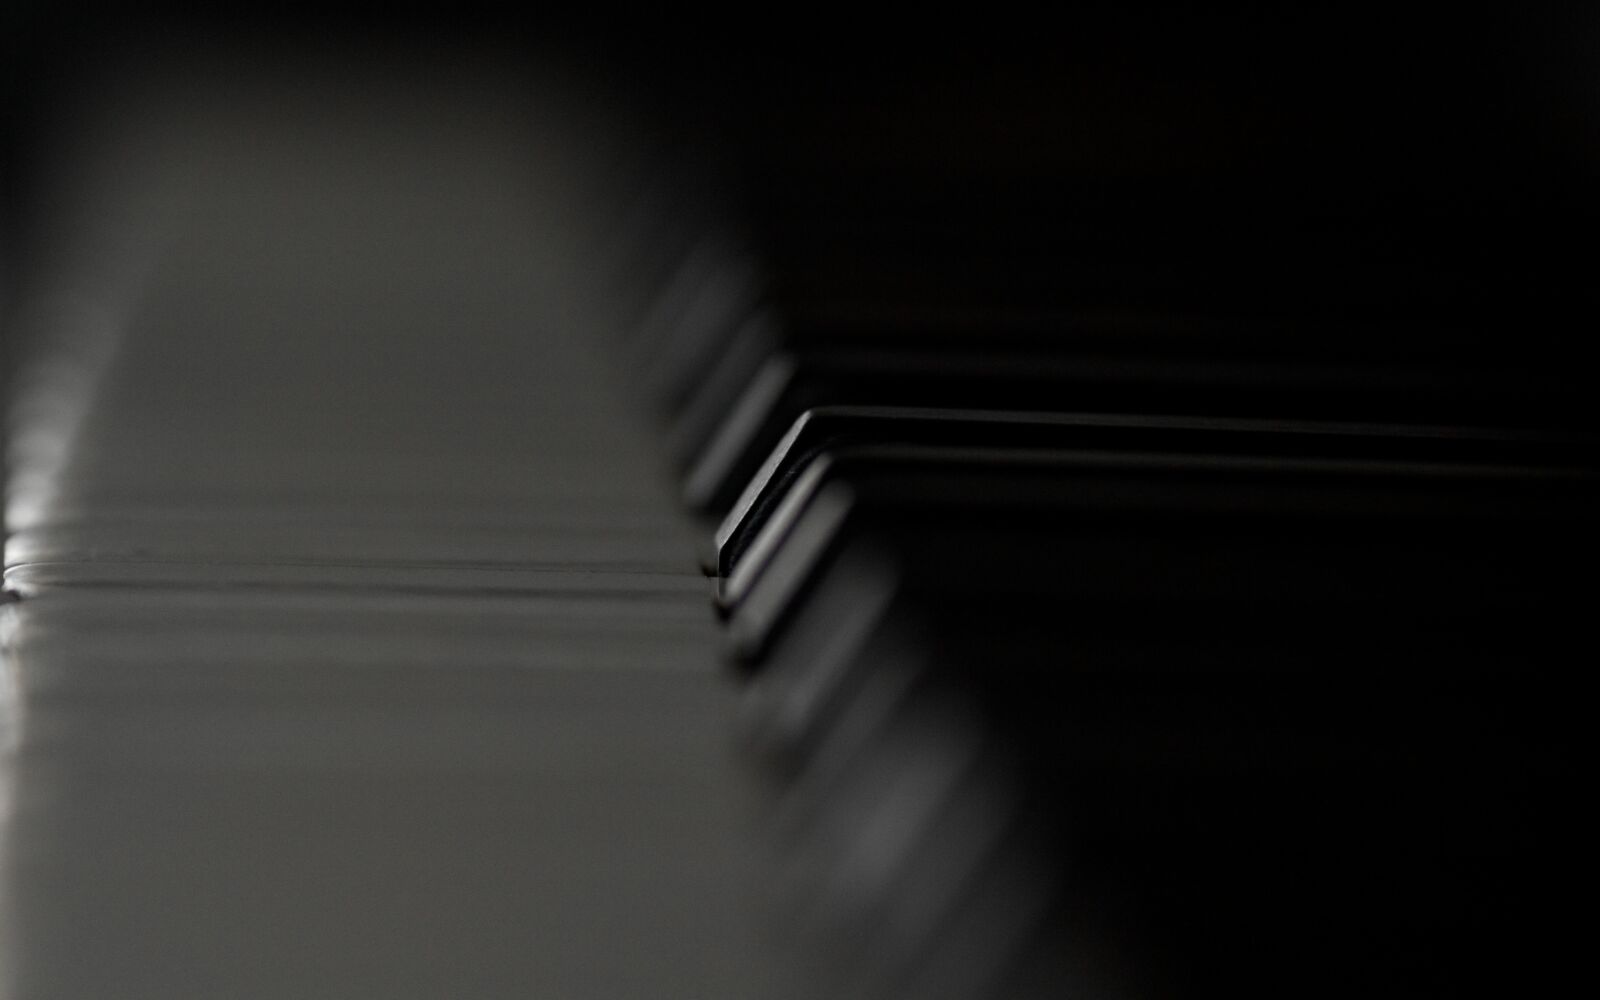 Canon EOS 60D sample photo. Piano, piano key, music photography